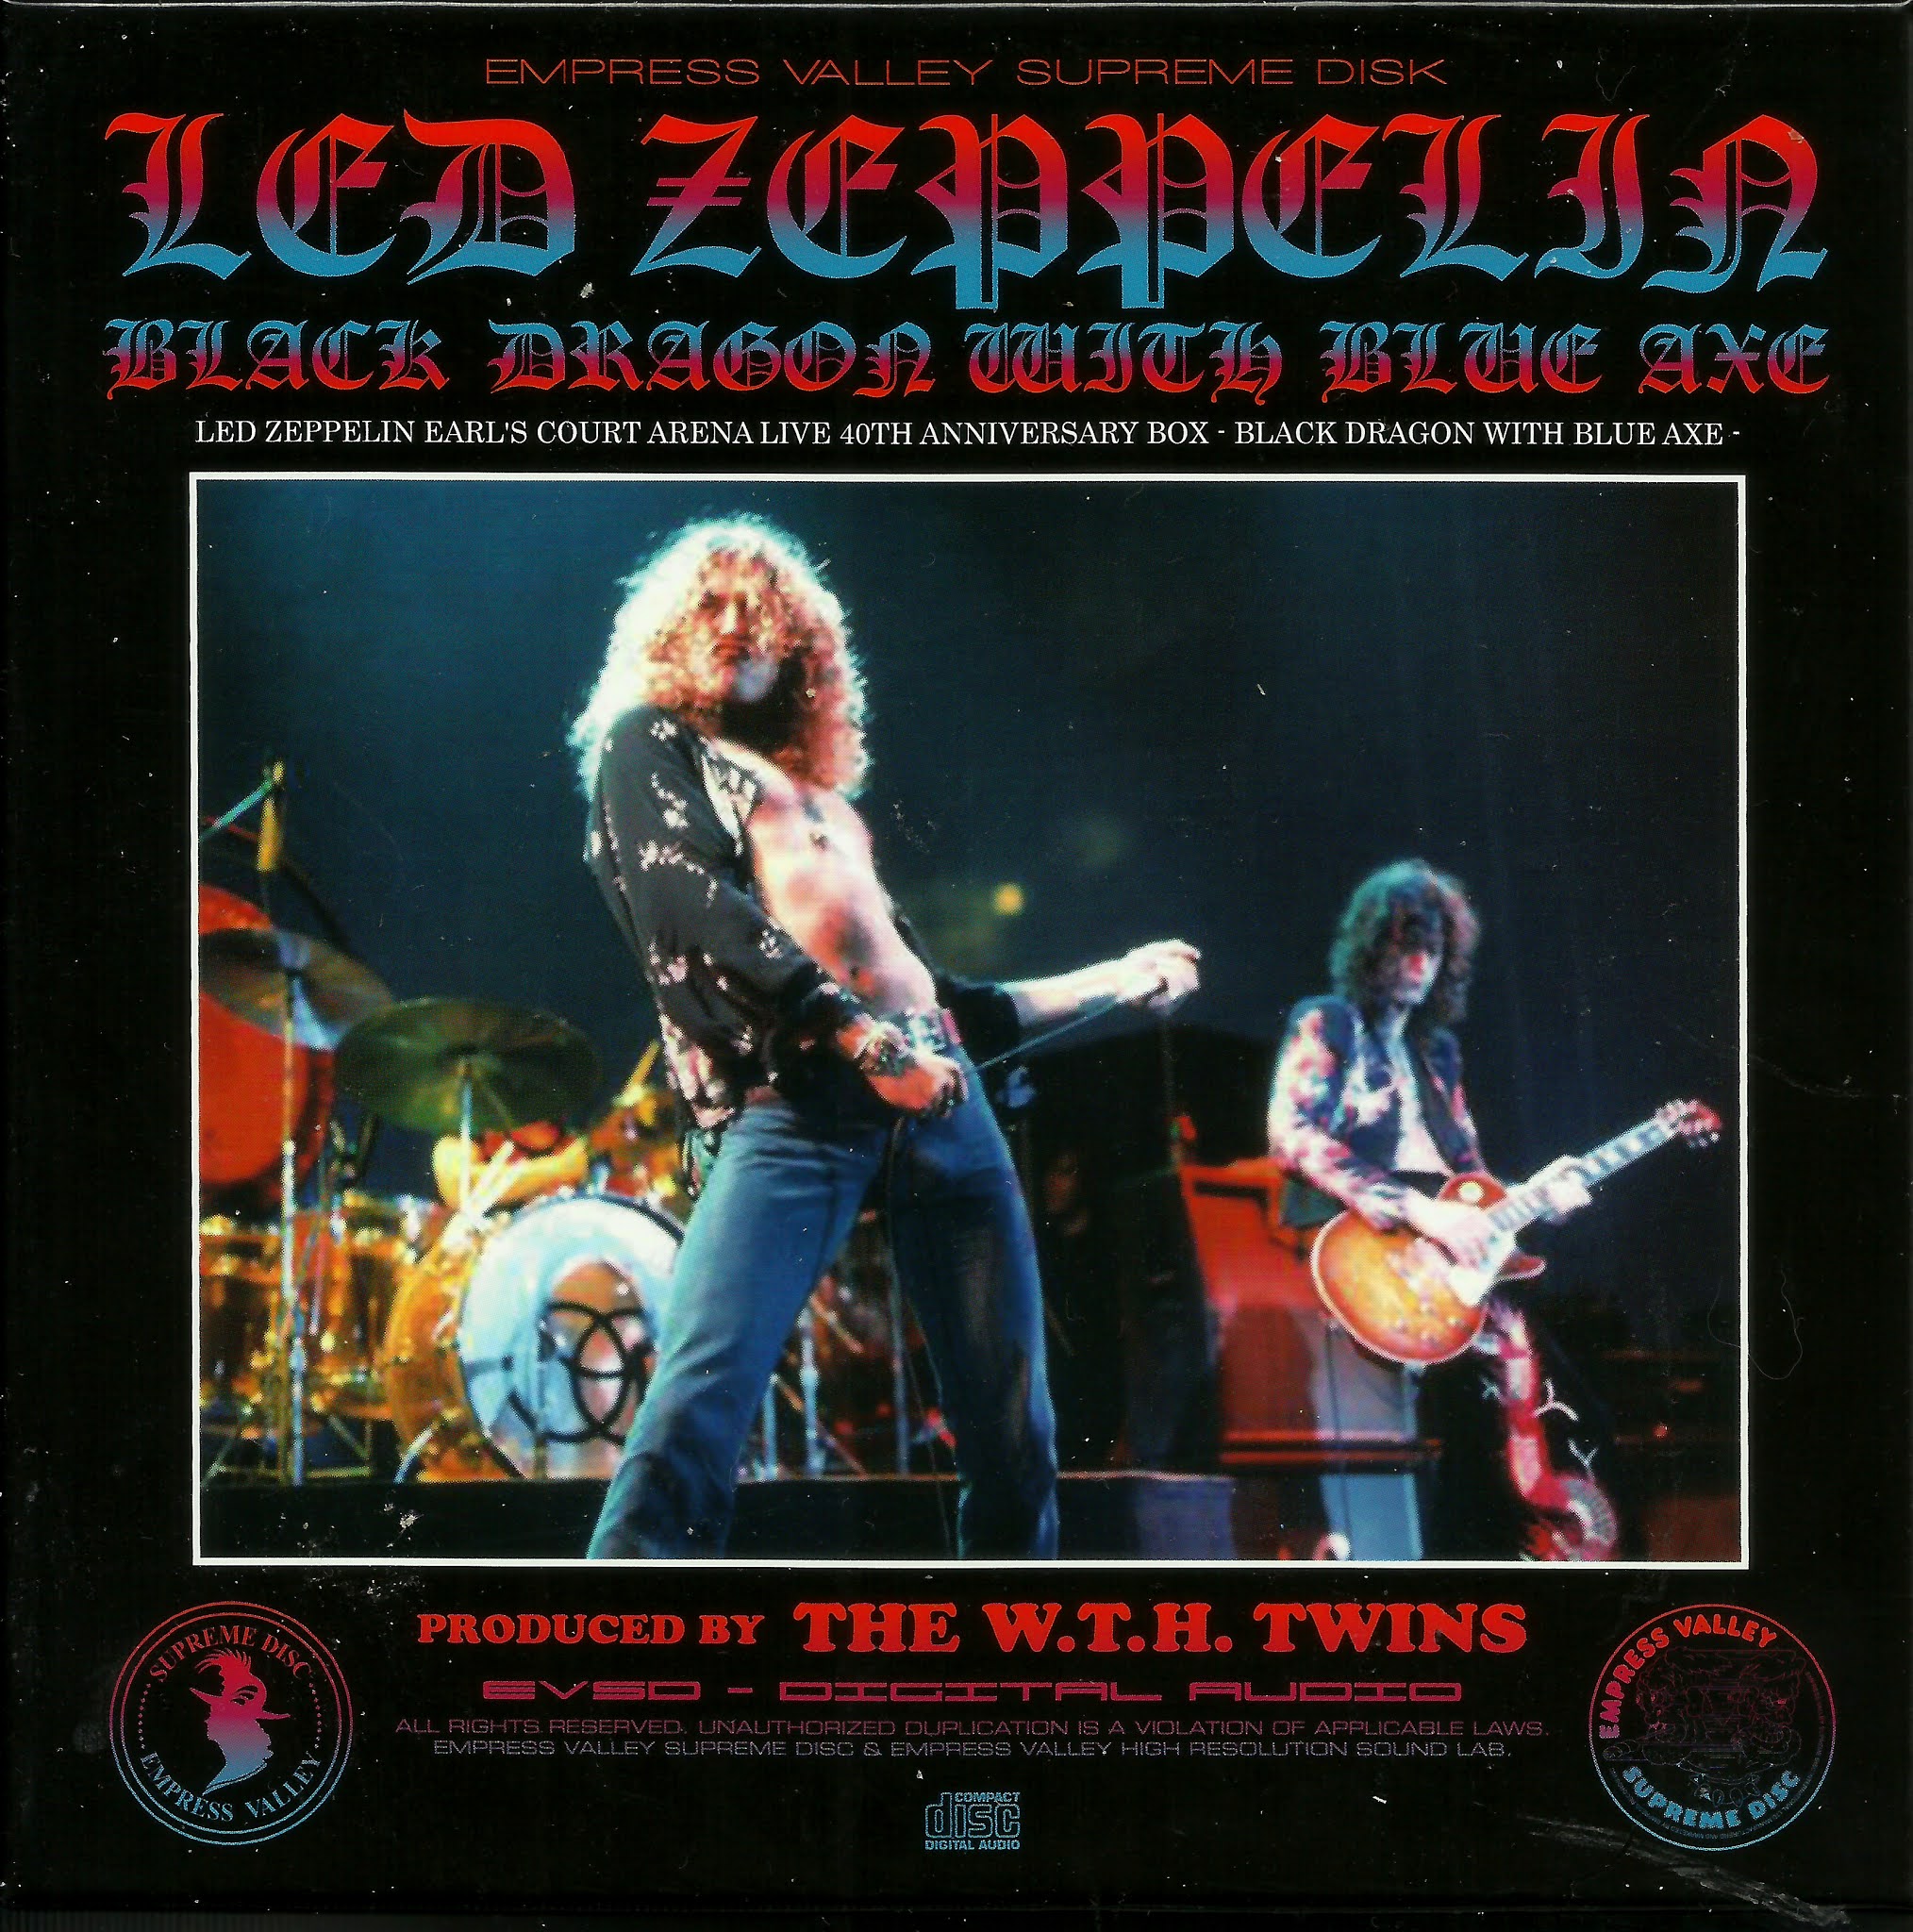 Long Live Led Zeppelin